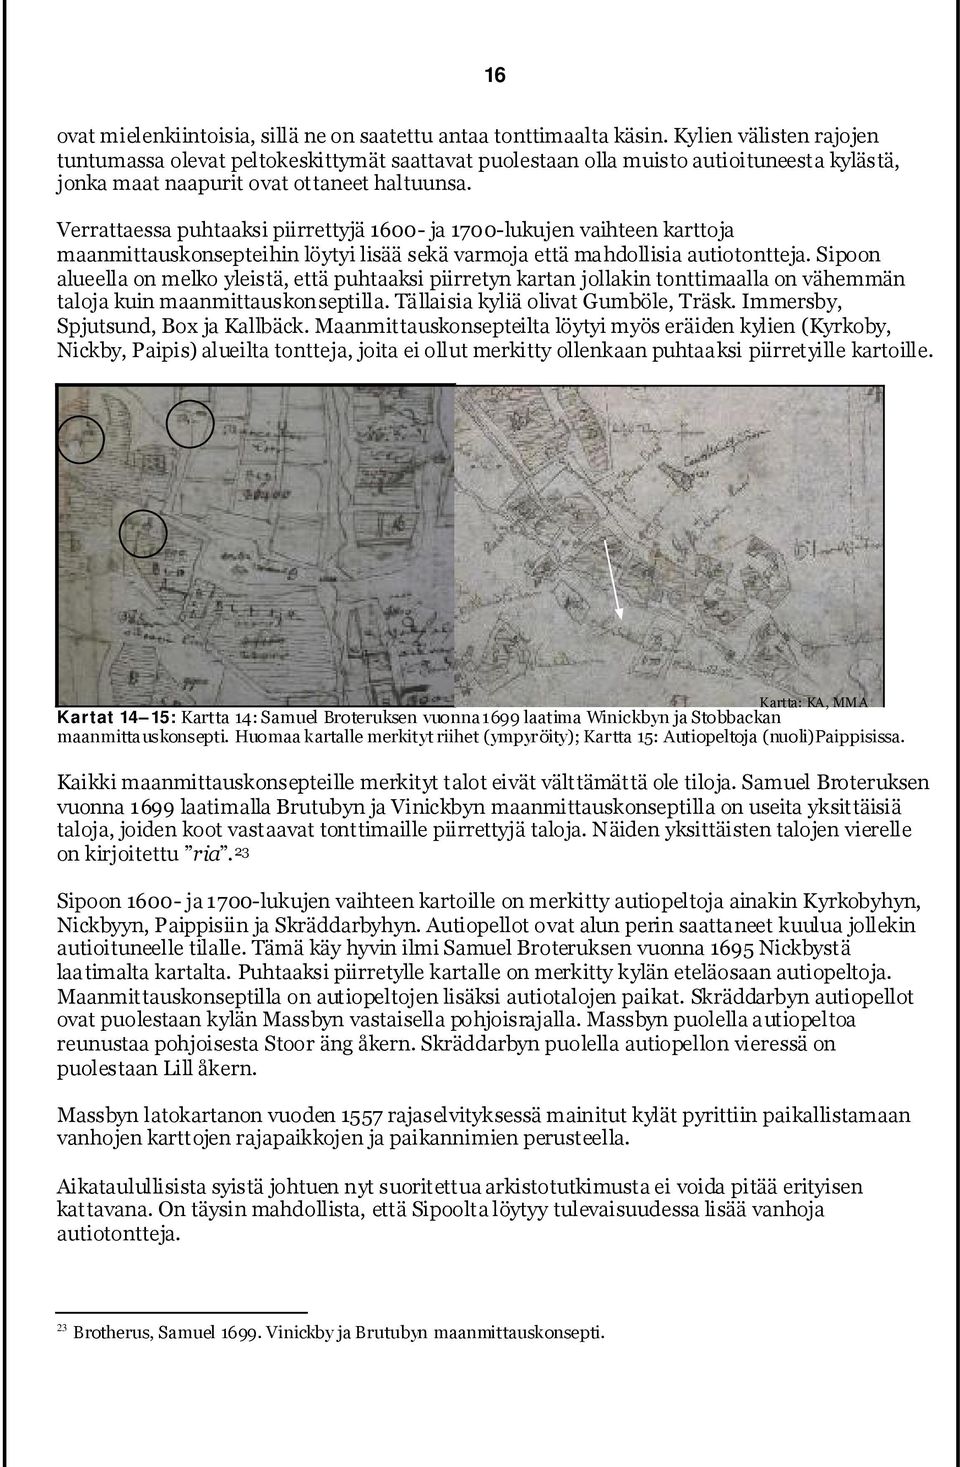 Verrattaessa puhtaaksi piirrettyjä 1600- ja 1700-lukujen vaihteen karttoja maanmittauskonsepteihin löytyi lisää sekä varmoja että mahdollisia autiotontteja.